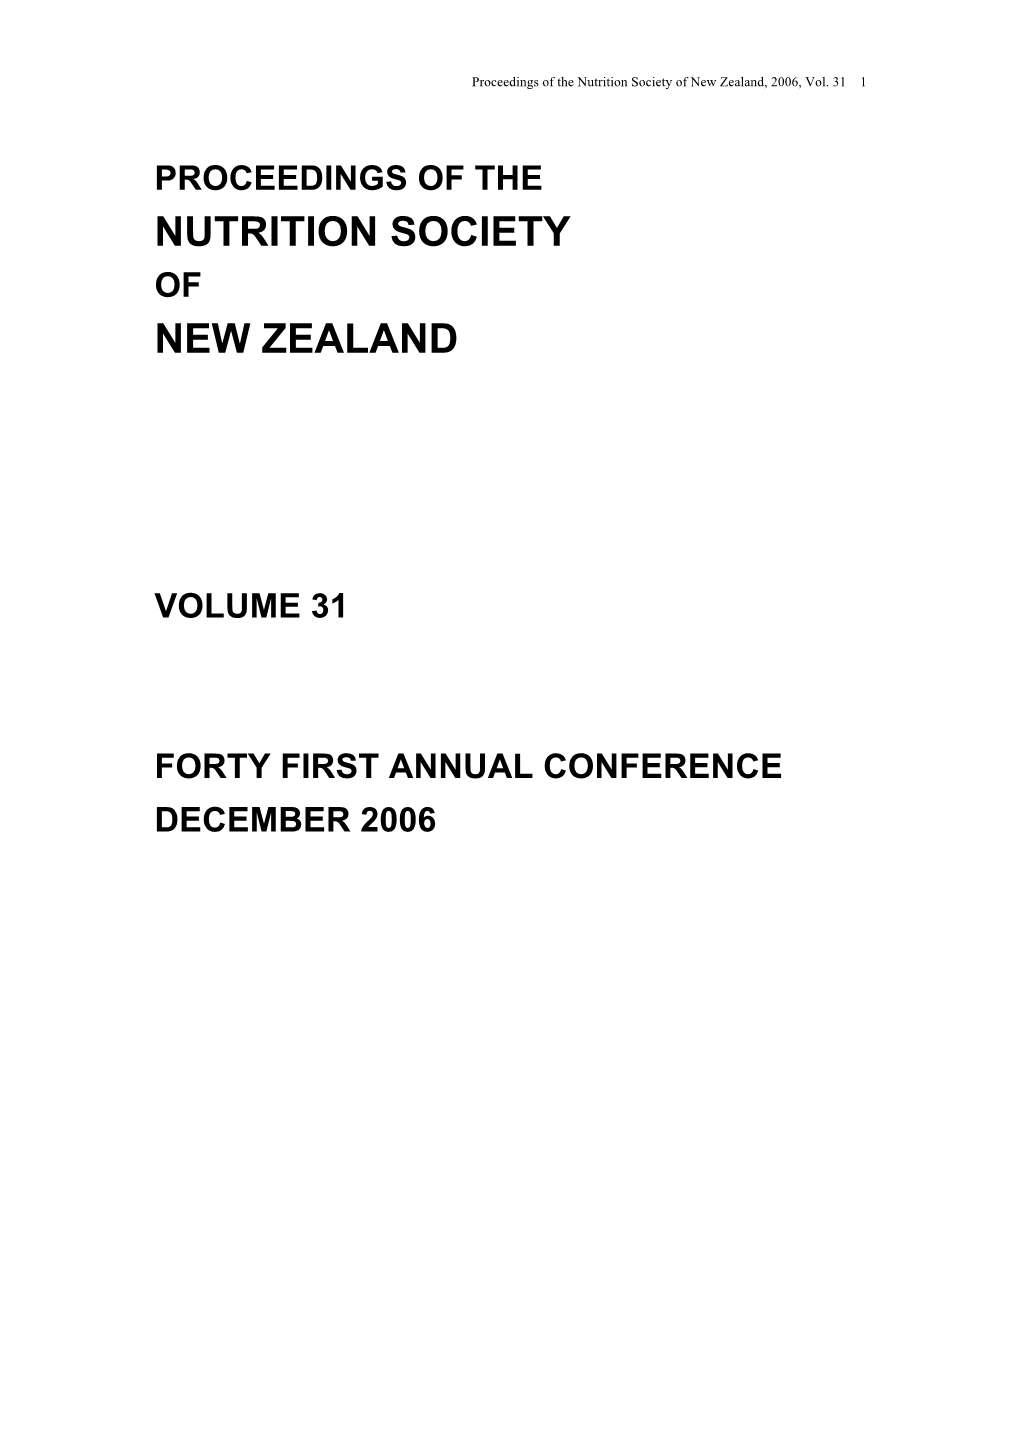 Nutrition Society New Zealand